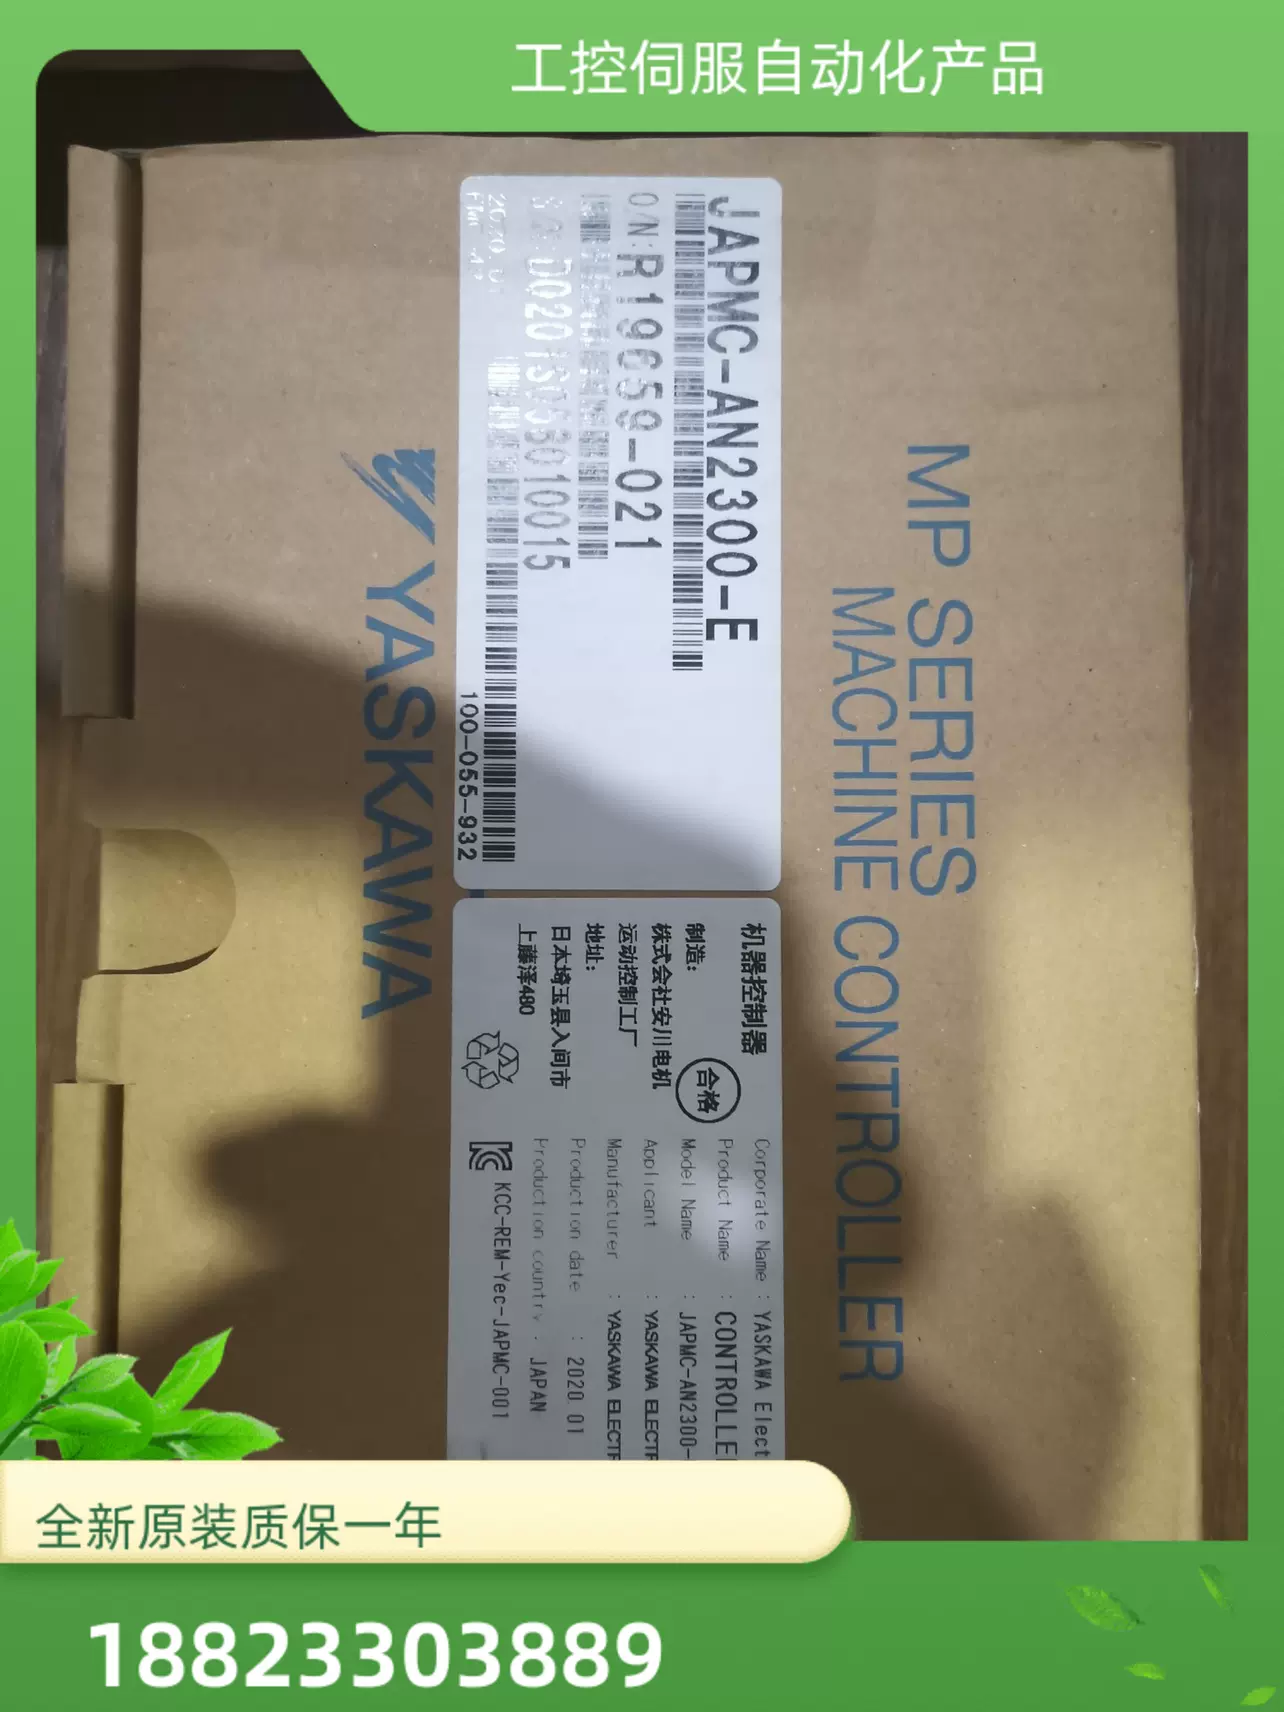 YASKAWA/JAPMC-MC2310-E/AN2300E-新款安川运动控制器模块询价-Taobao